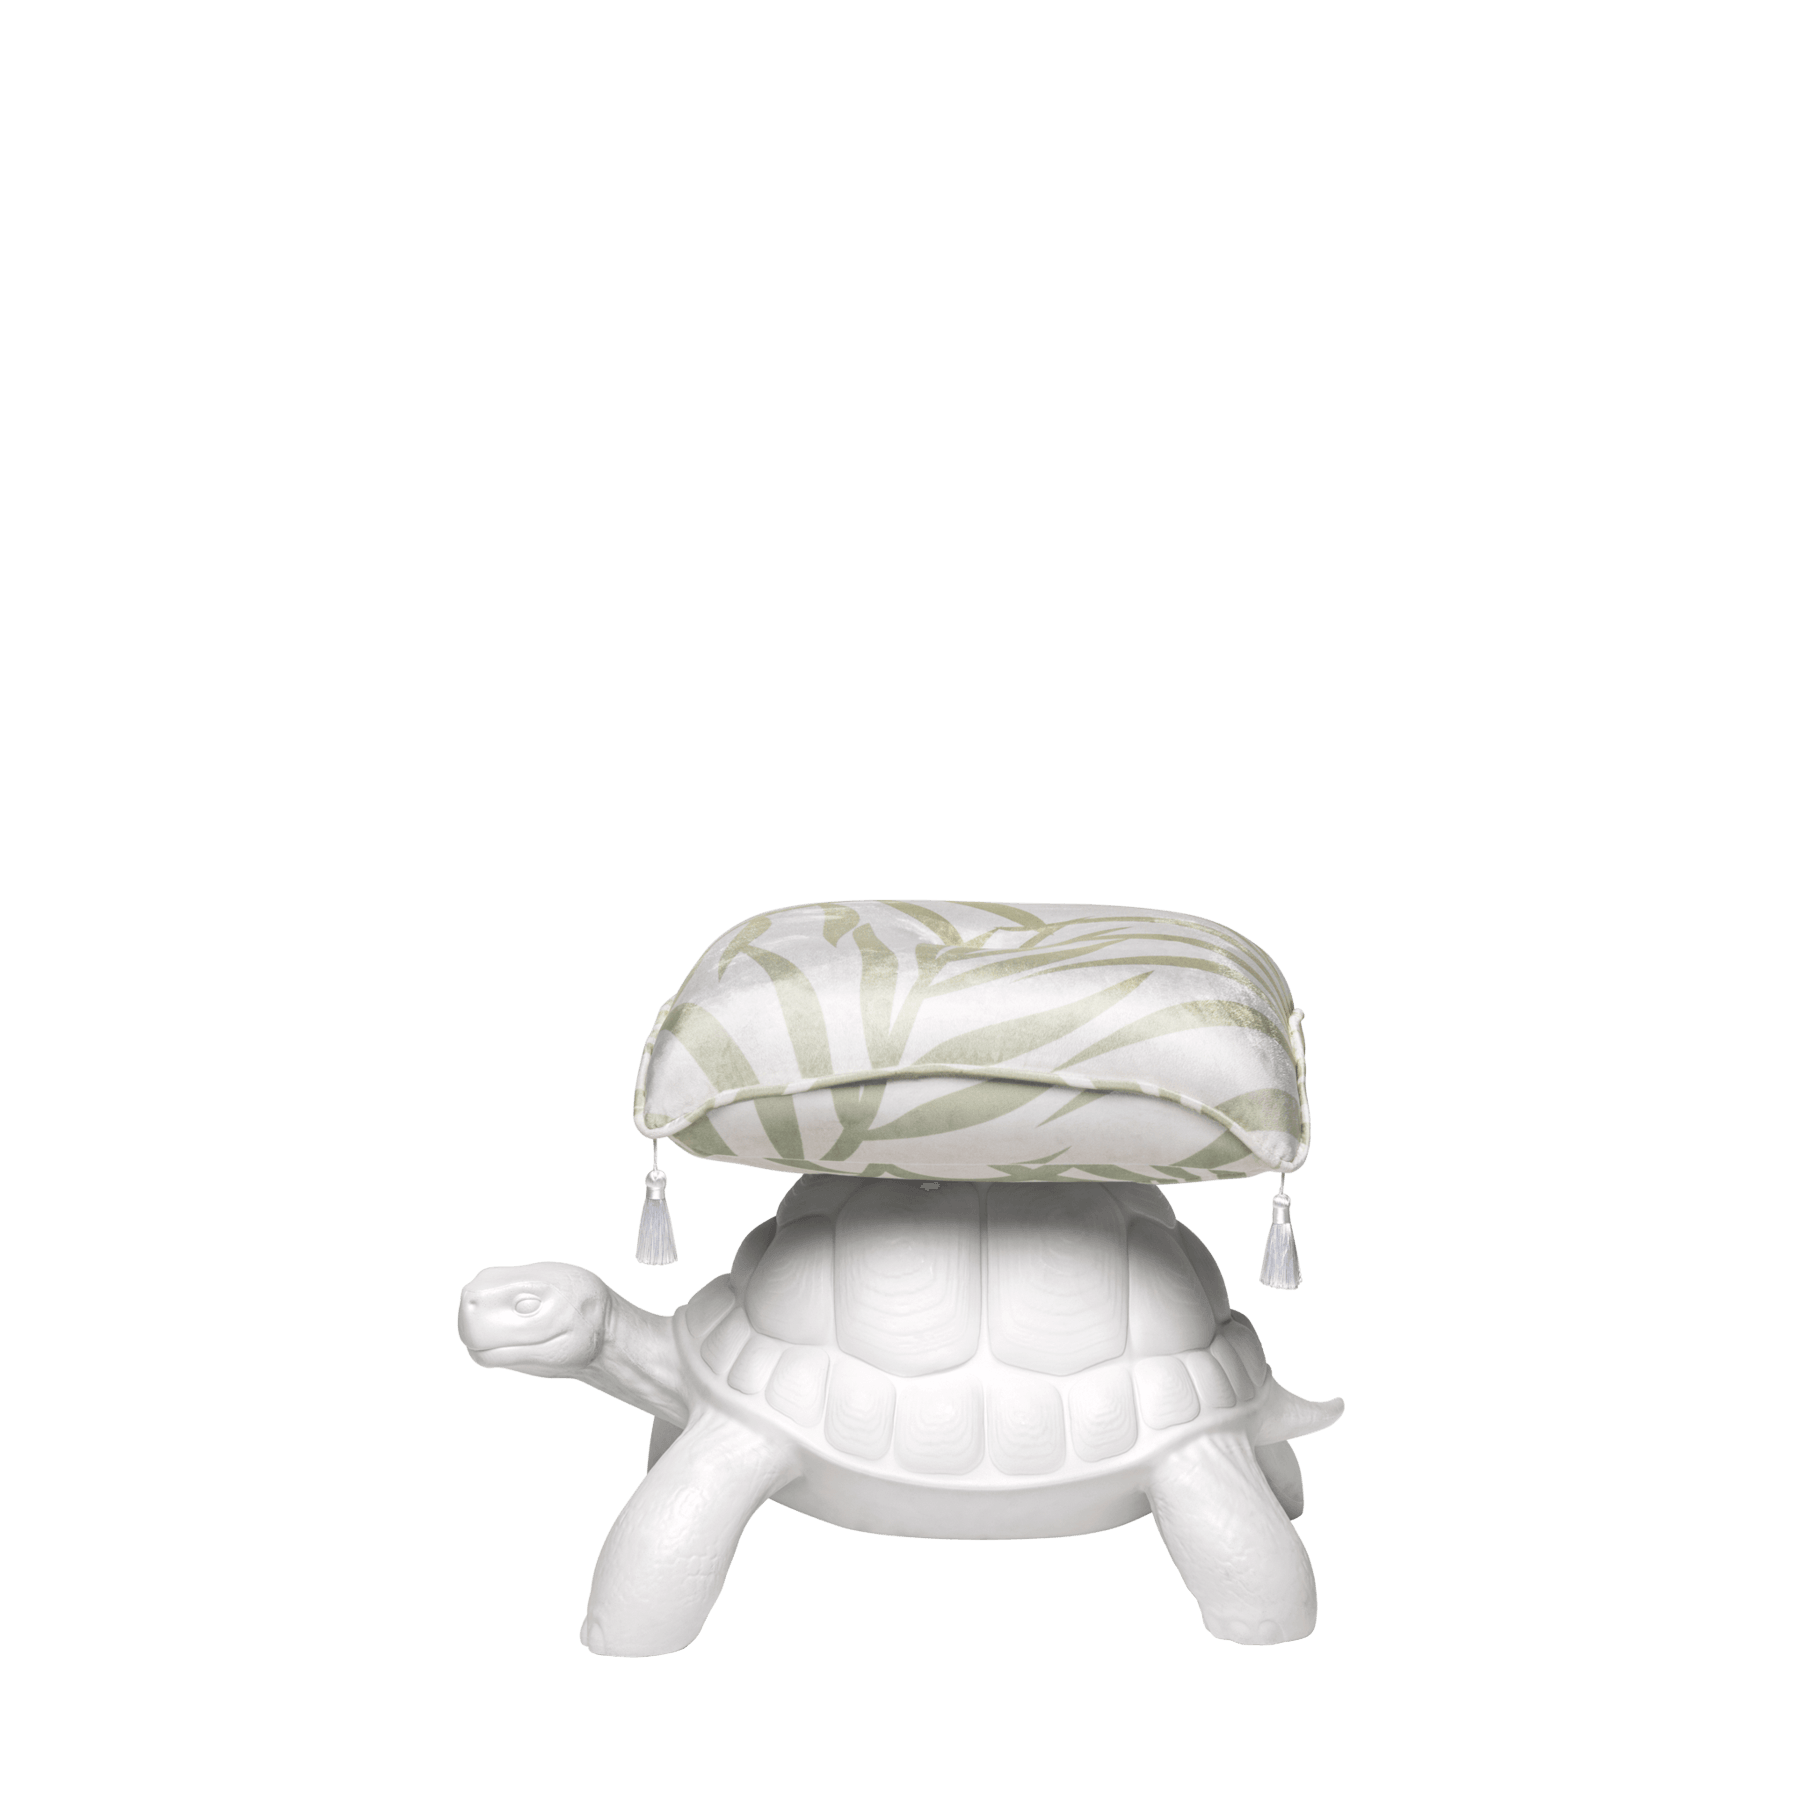 Turtle Carry / Pouf - Qeeboo - PARIS14A.RO